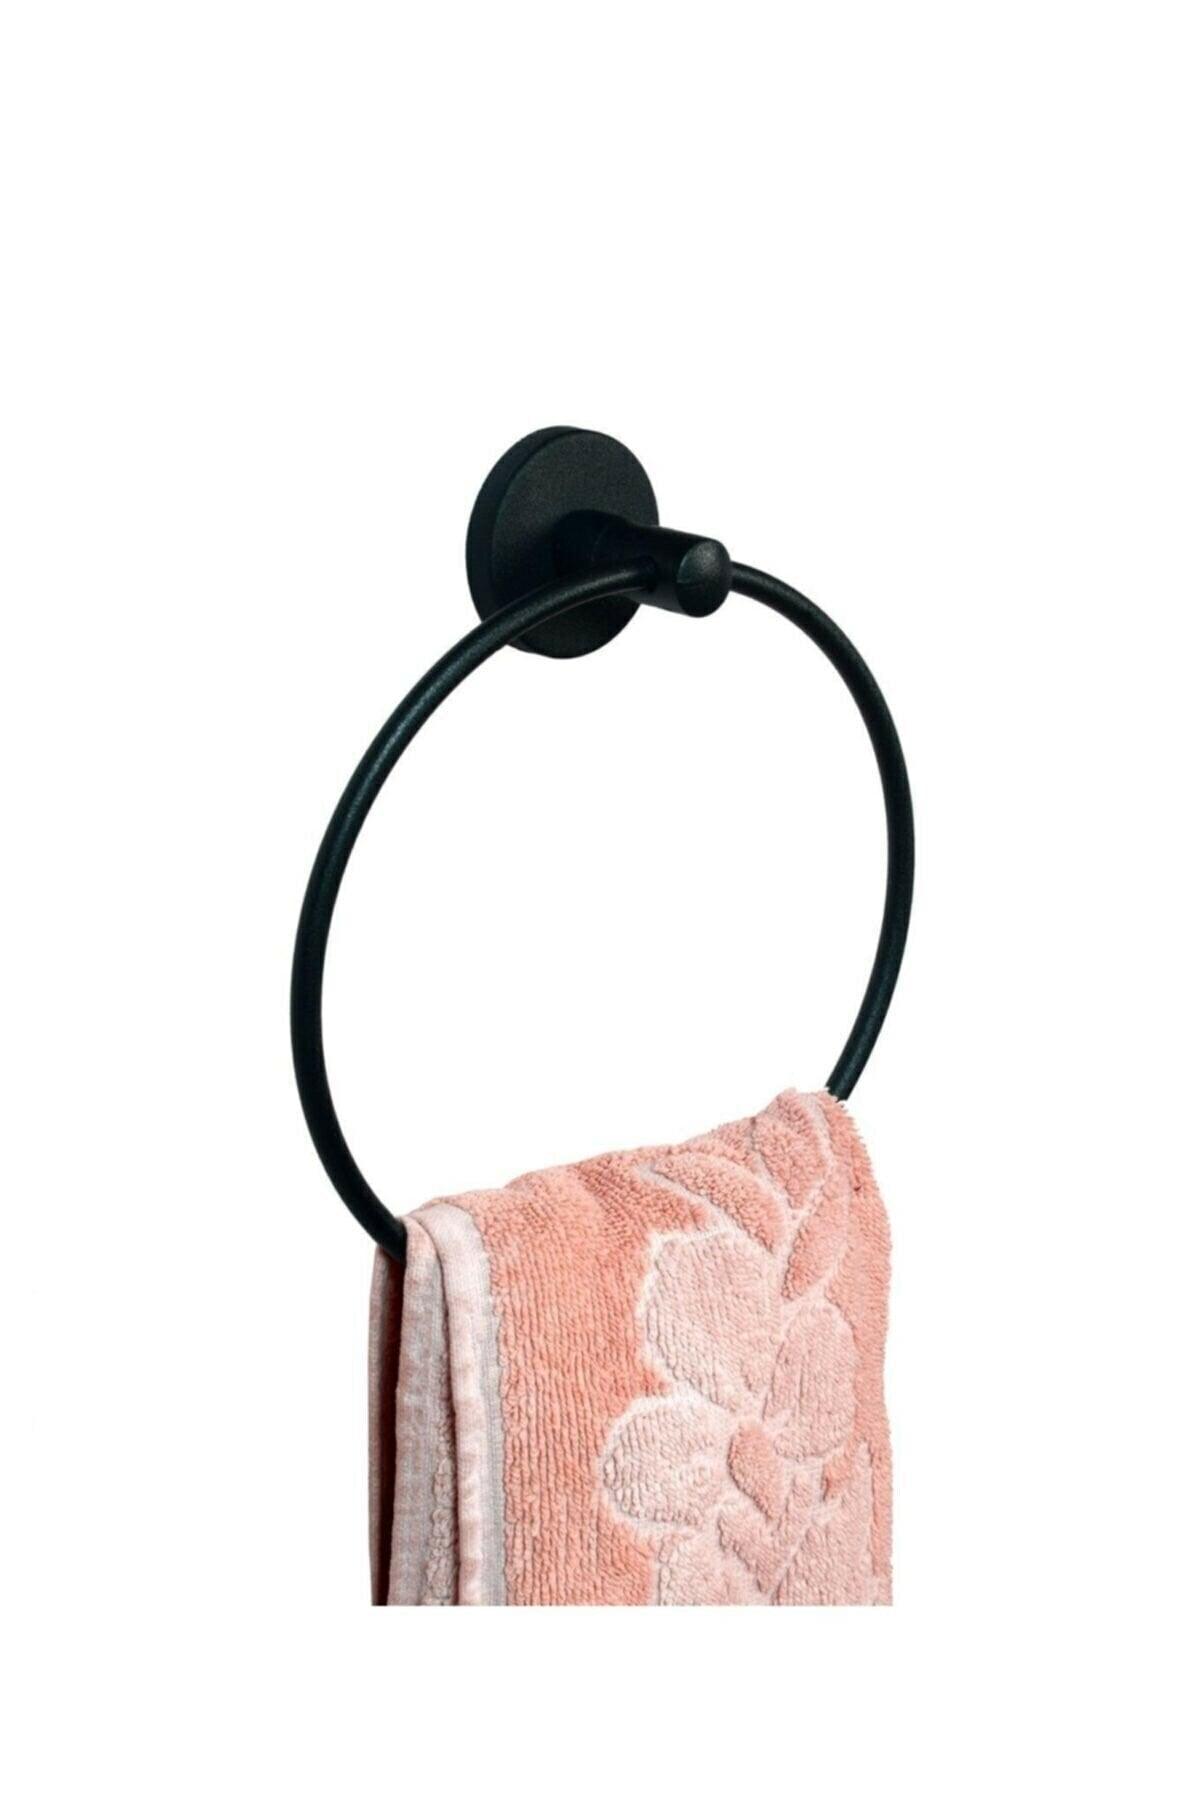 Badezimmer Zubehör Set rundes Handtuch mit Deckel Toilettenpapier 2 Li Set schwarz - Swordslife